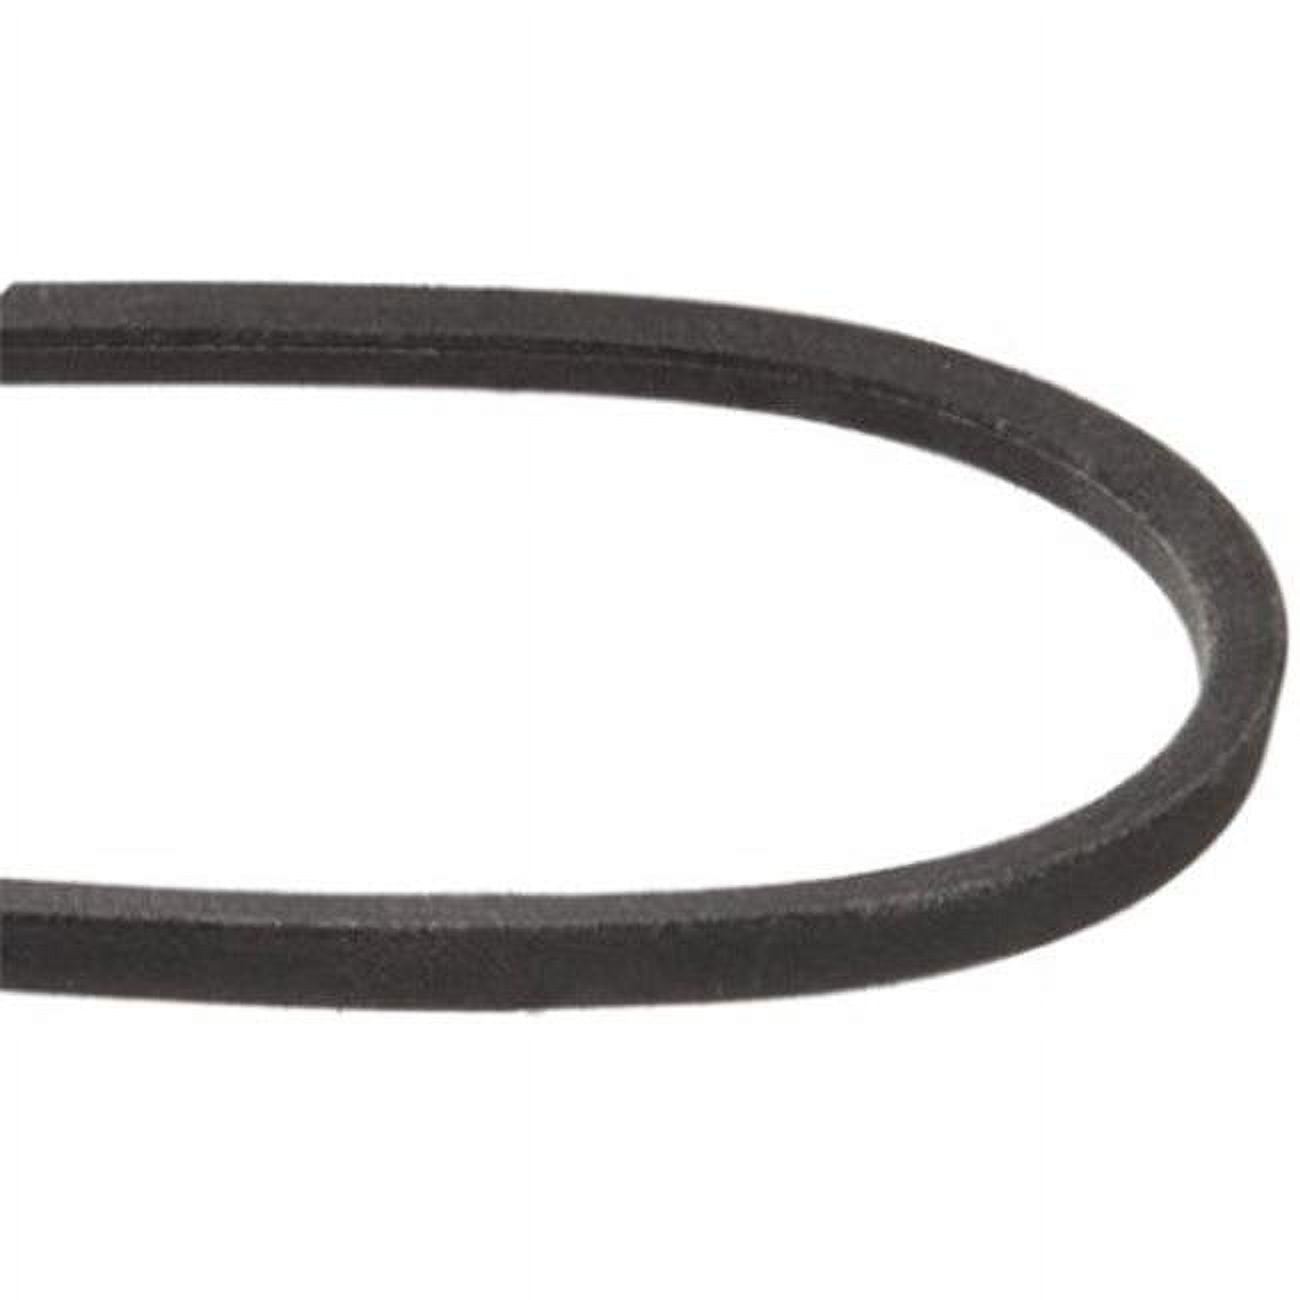 Mxv4-420 0.5 X 42 In. Heavy-duty Lawn & Garden Equipment Belt, Black